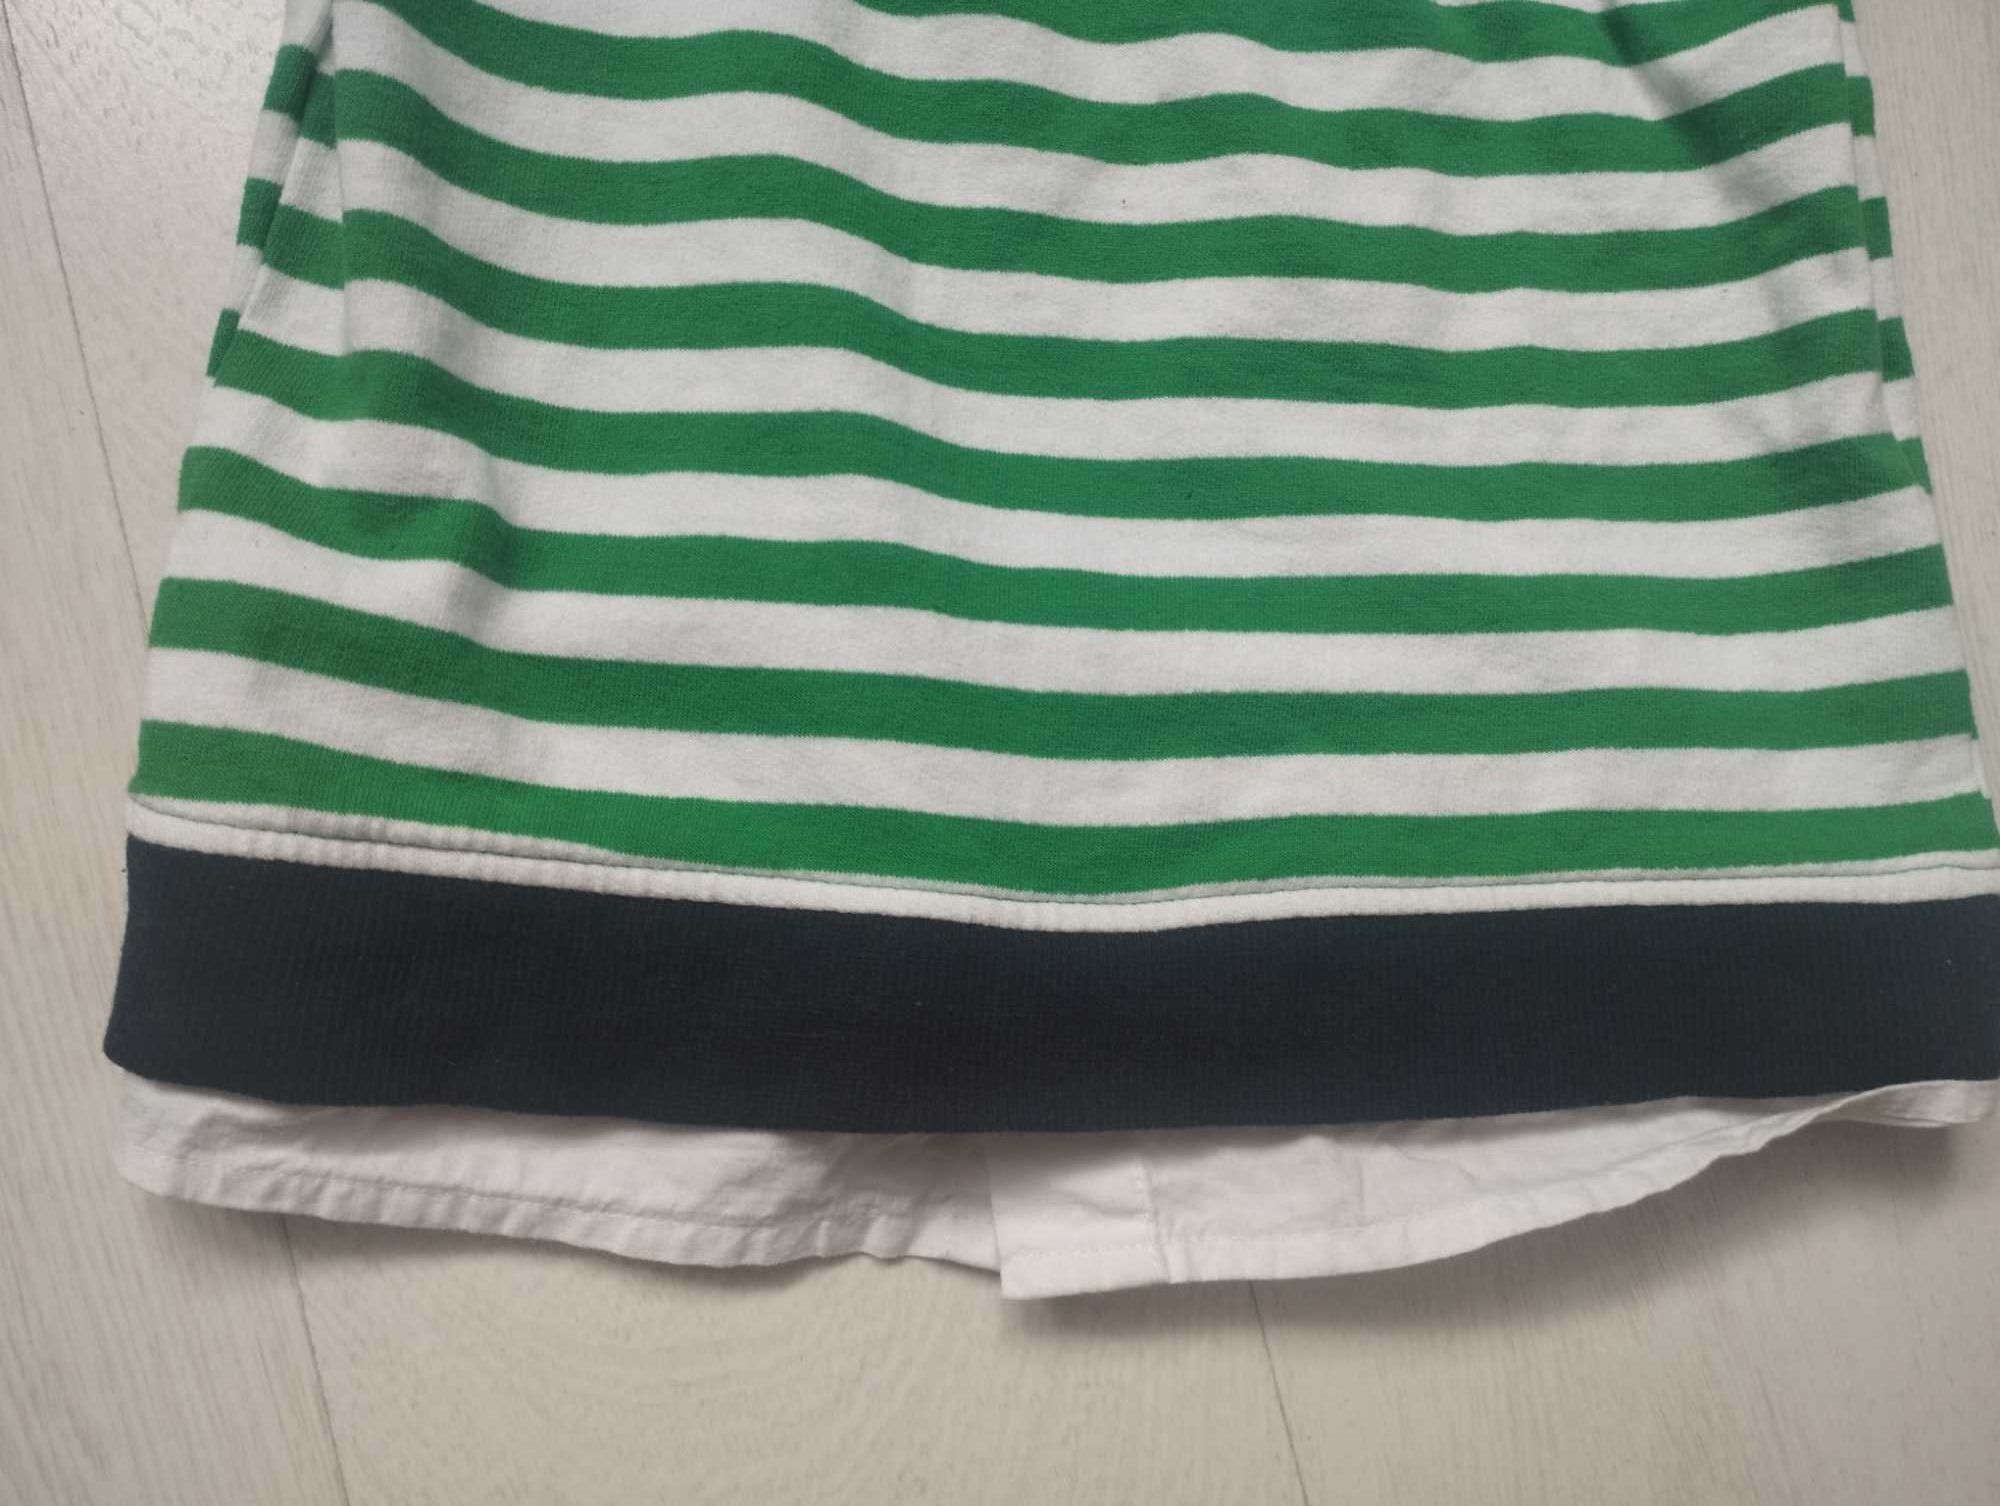 Sweterek z koszulą w paski zielono granatowe r. 116